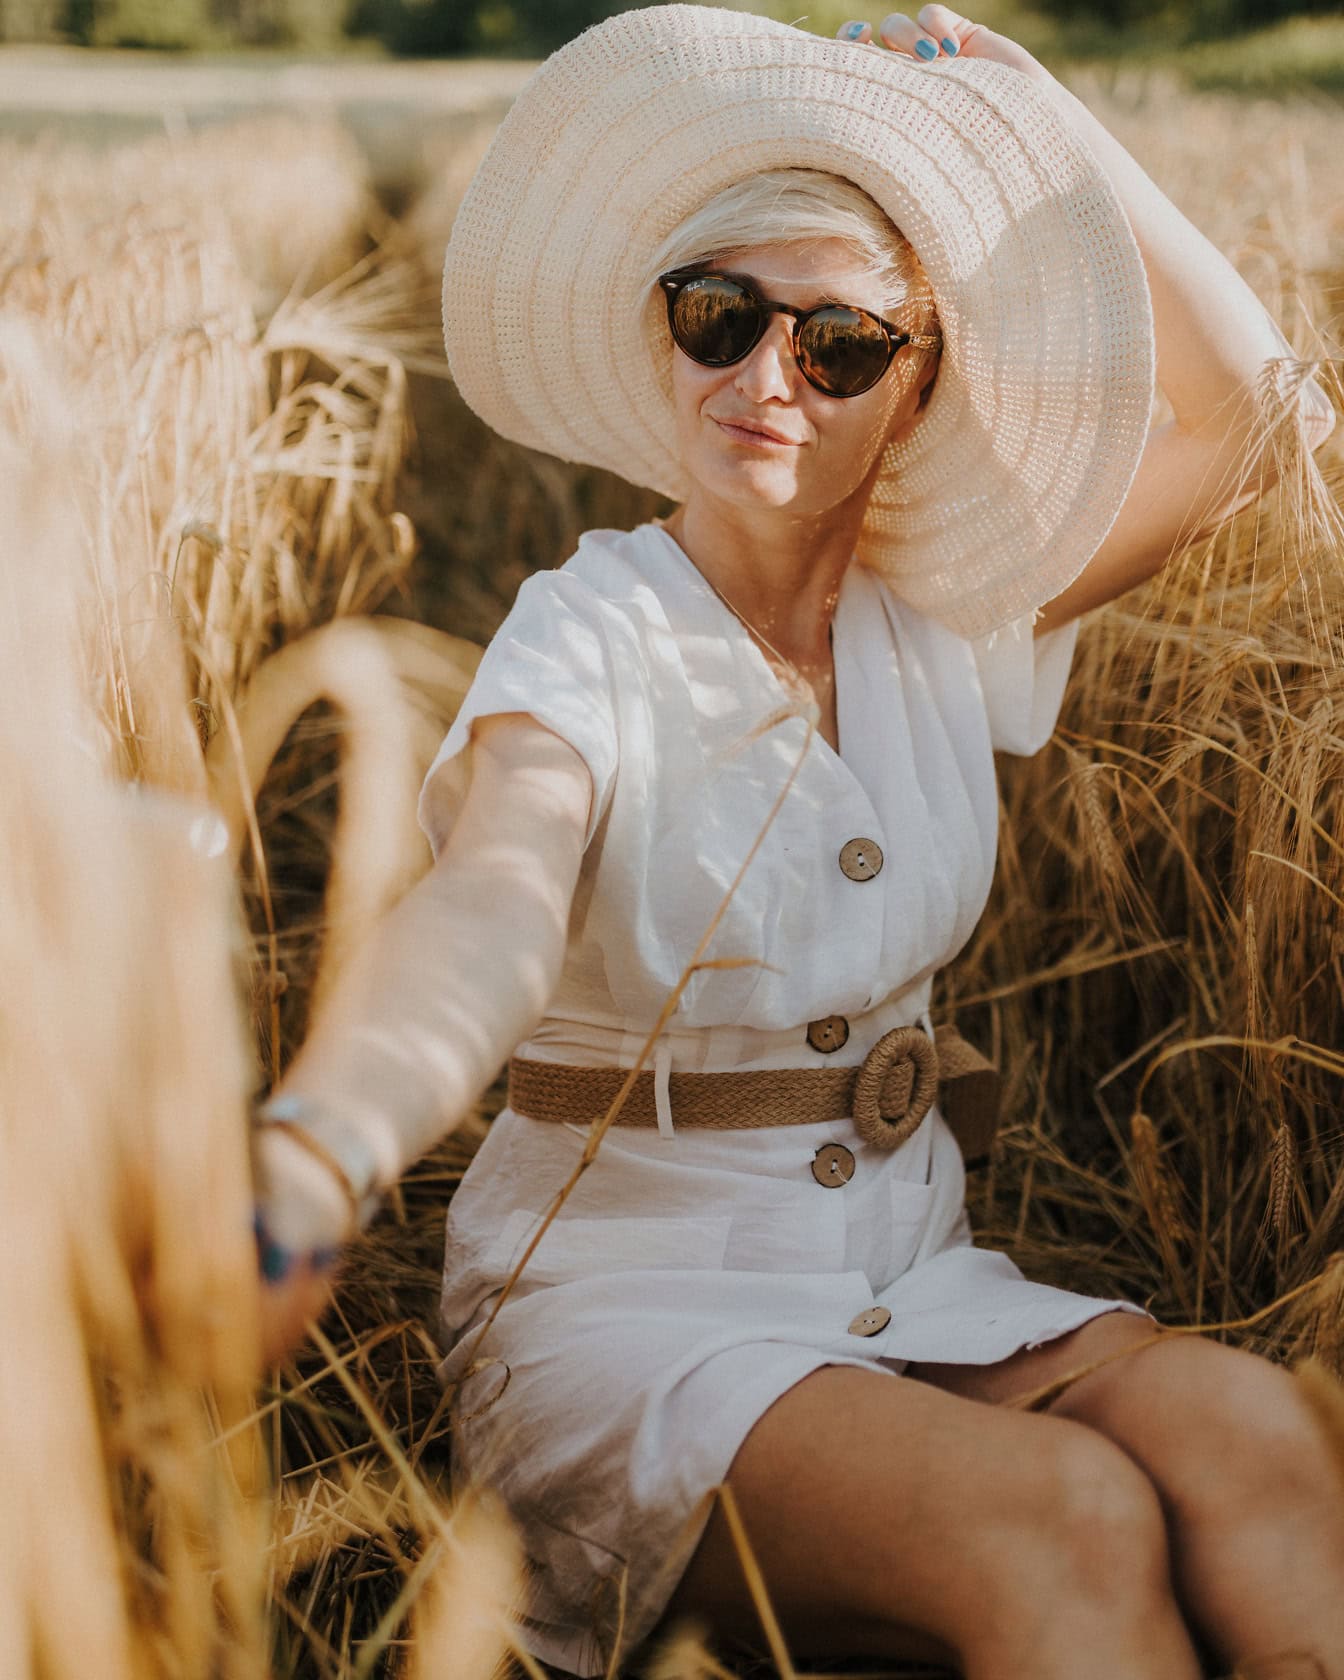 Lijepa glamurozna plavokosa dama sa šeširom i sunčanim naočalama sunča se u polju pšenice krajem ljeta